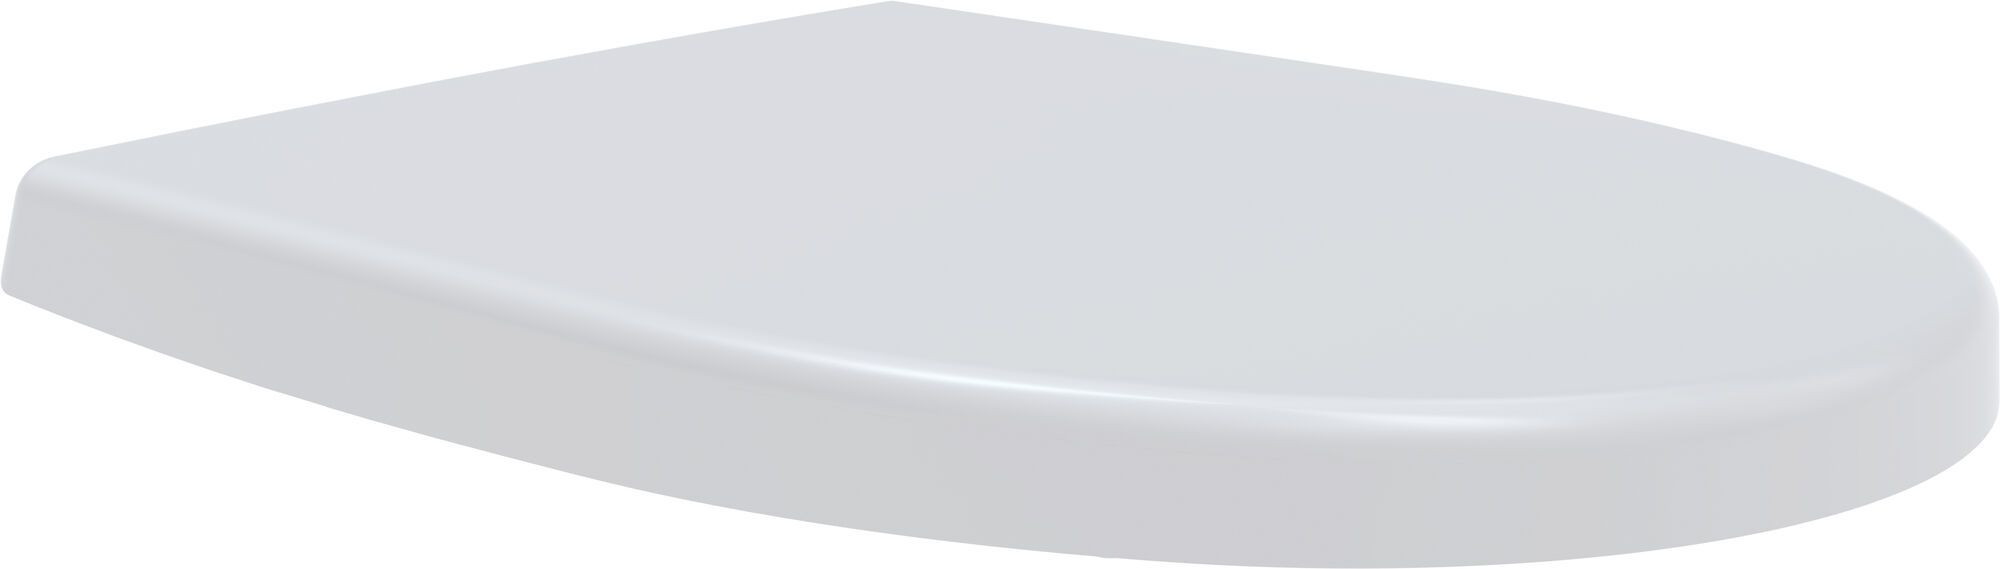 Toilet seat D-Star 300, white